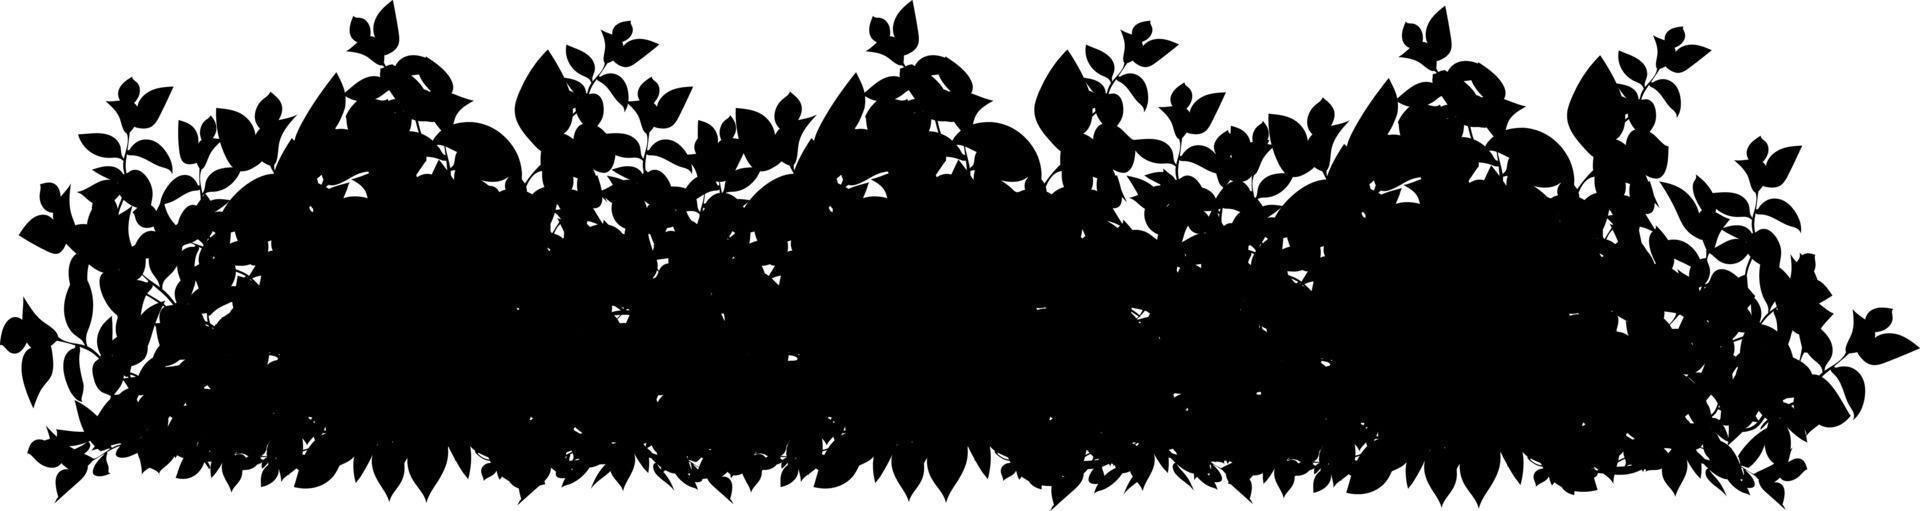 reeks van sier- zwart fabriek in de het formulier van een hedge.realistisch tuin struik, seizoensgebonden struik, buxus, boom kroon struik gebladerte. vector